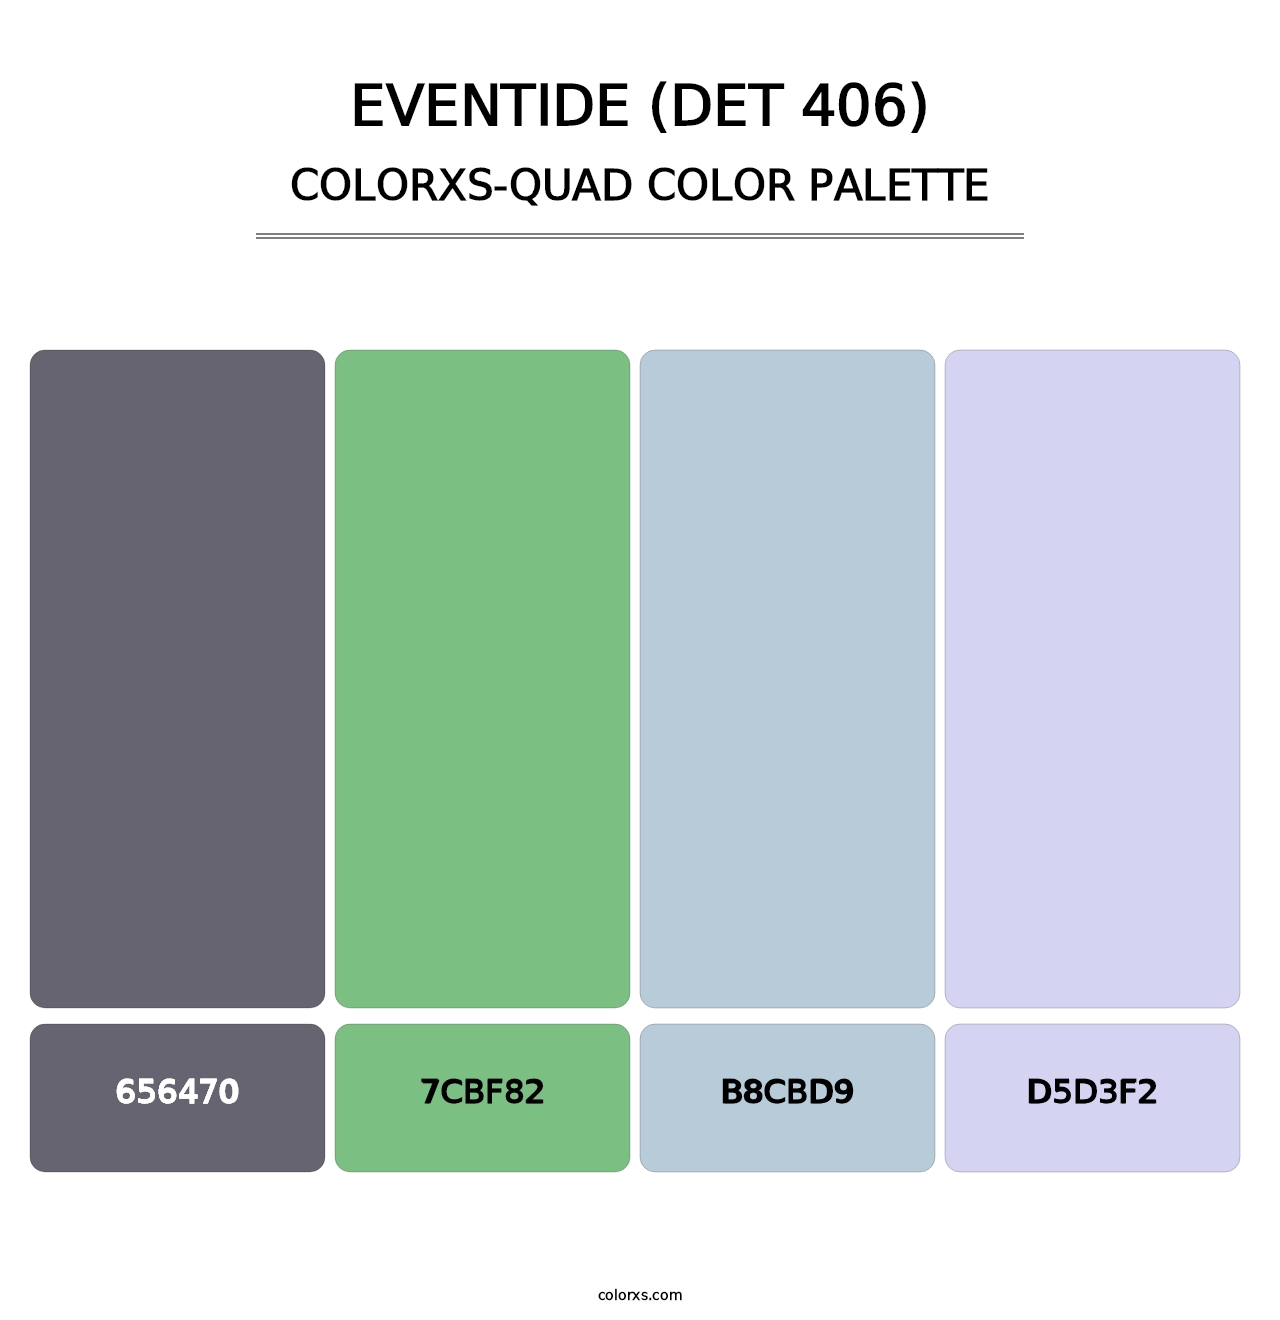 Eventide (DET 406) - Colorxs Quad Palette